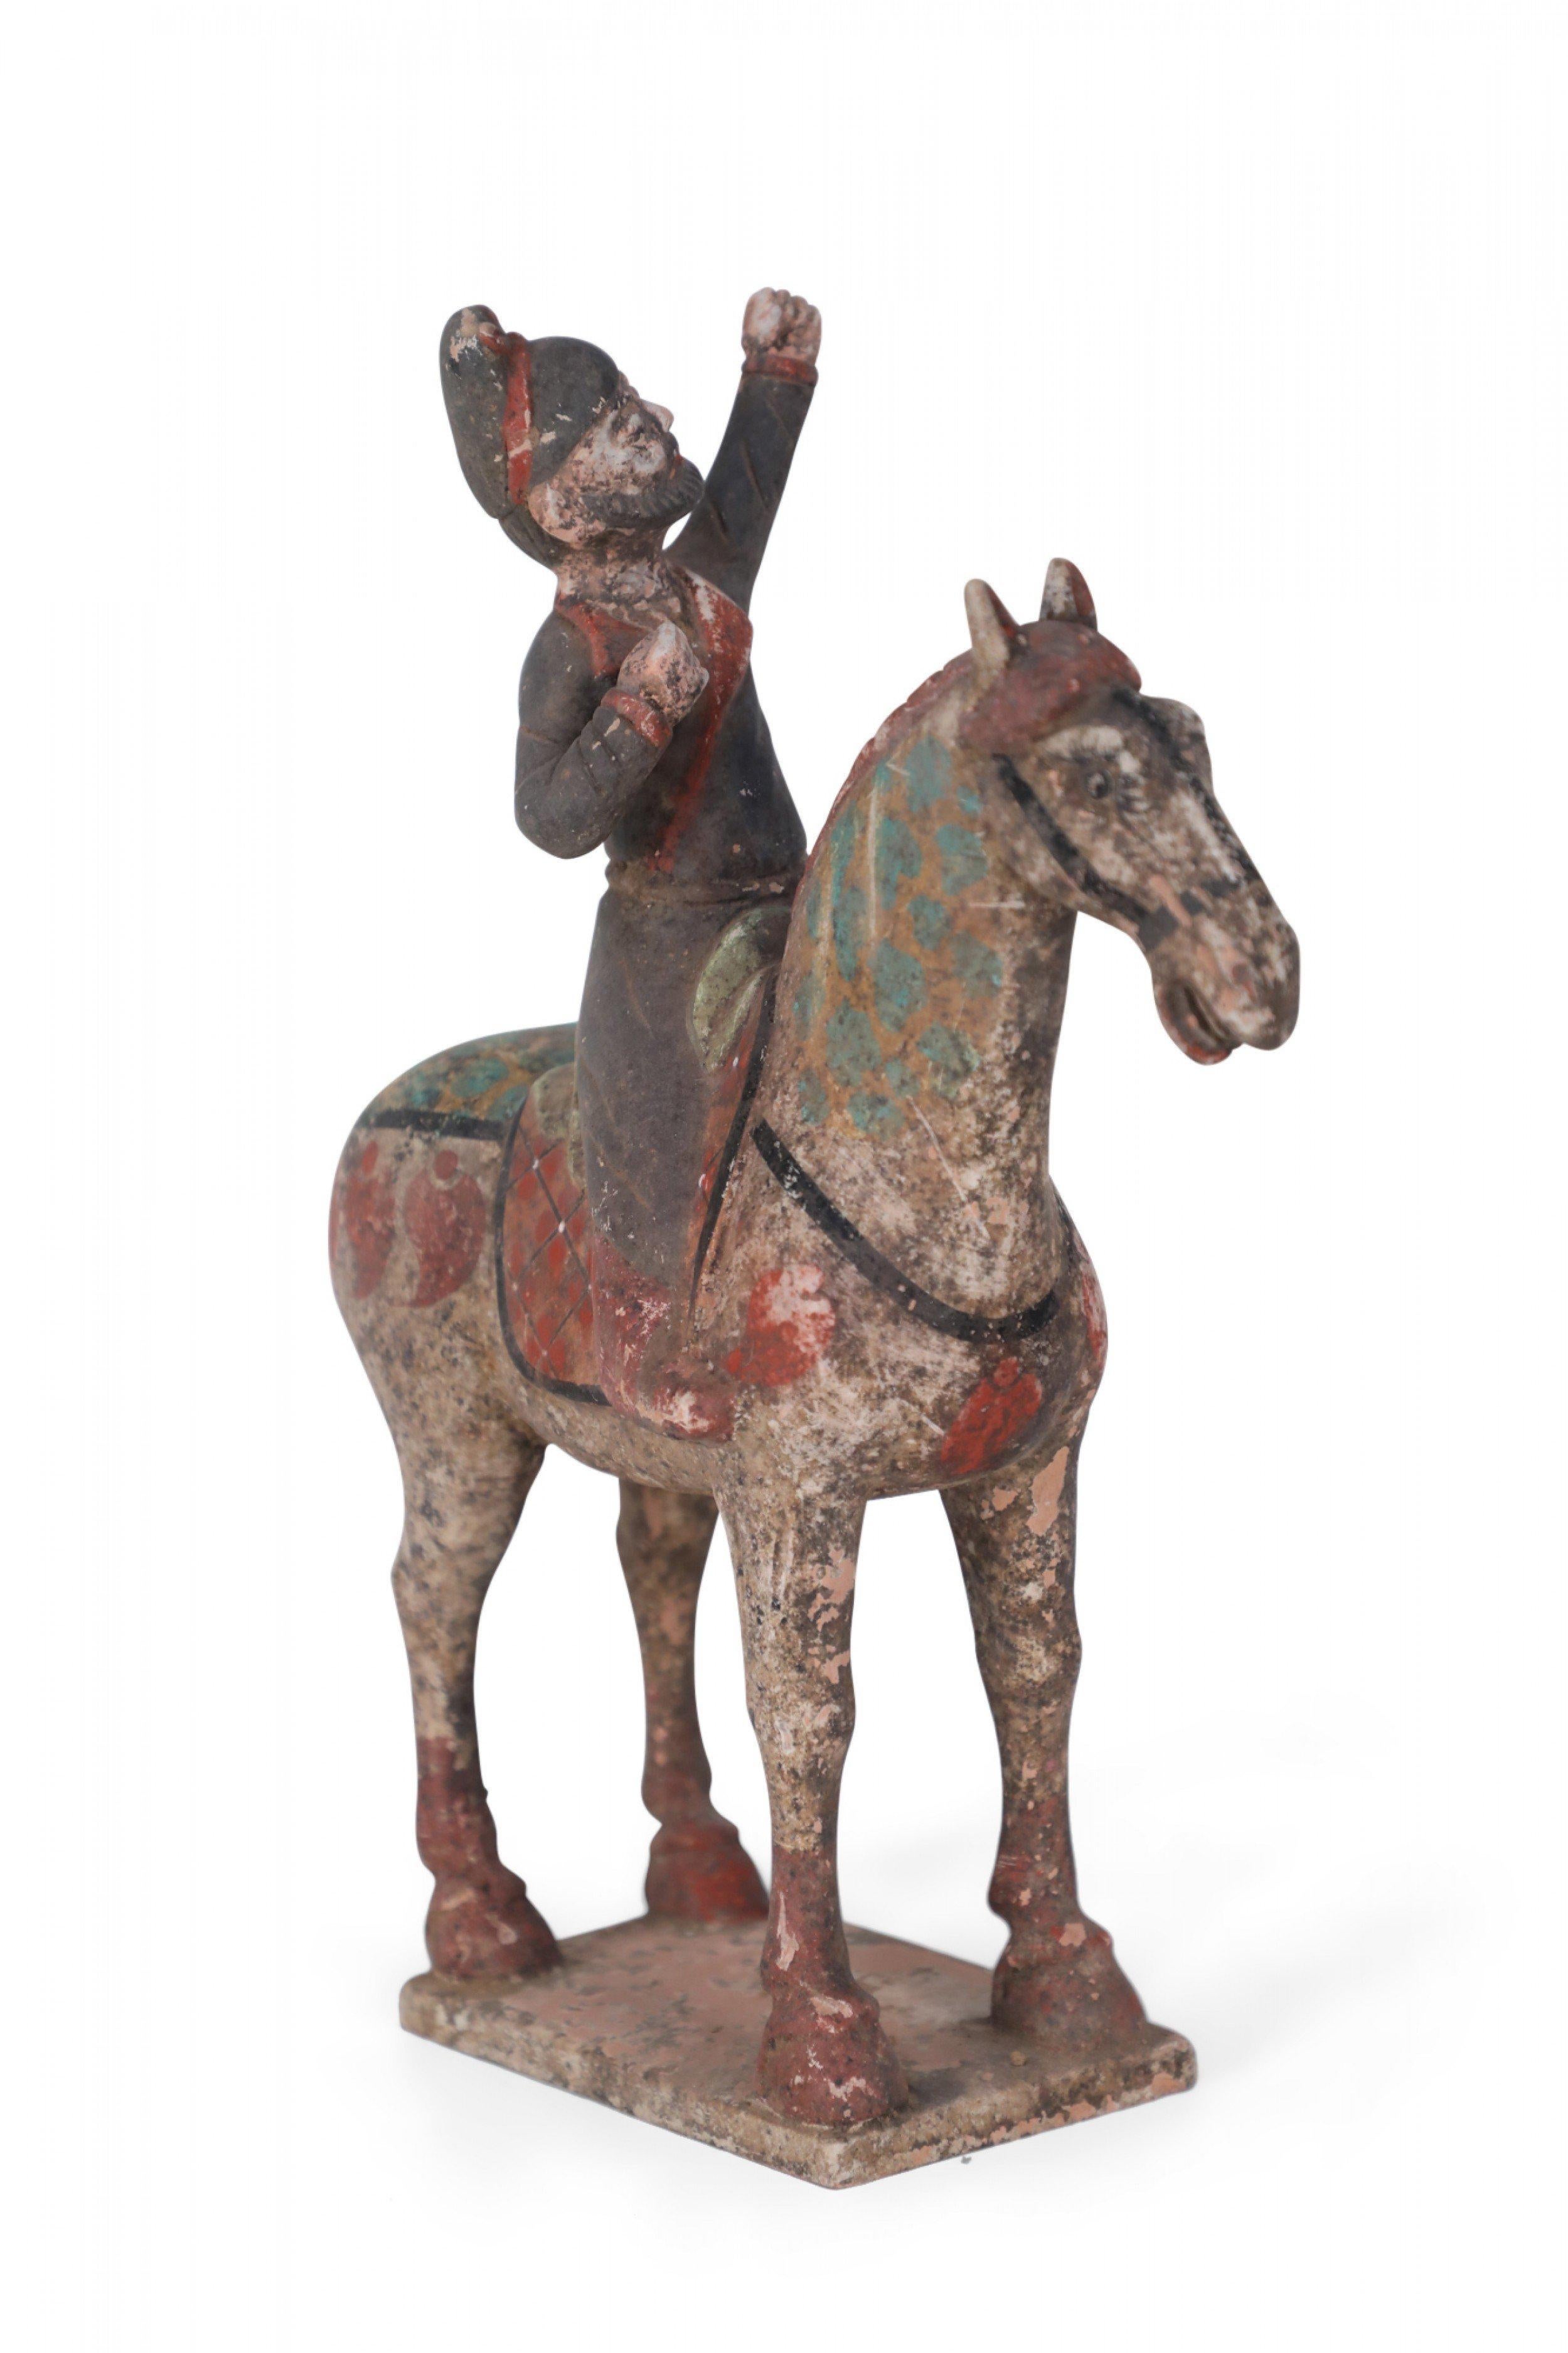 Antike chinesische Grabfigur aus Terrakotta im Stil der Tang-Dynastie. Sie zeigt einen Mann in dunkelgrauem Gewand, der mit erhobener Faust auf einem roten Sattel sitzt, auf einem mit blauen Punkten bemalten Pferd sitzt und auf einem quadratischen